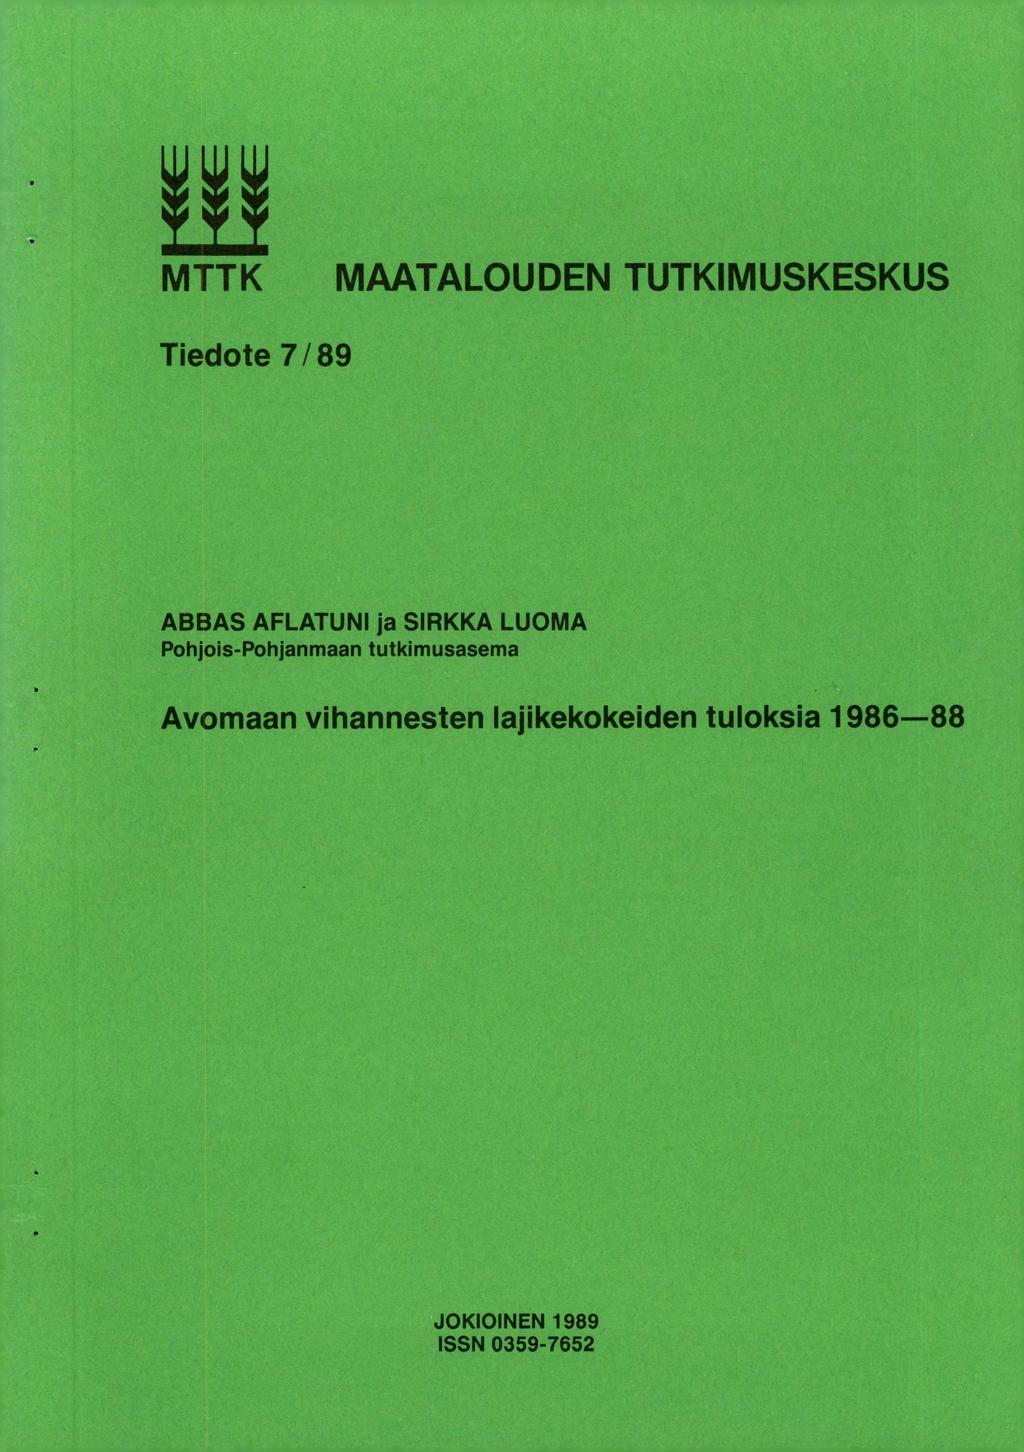 MTTK MAATALOUDEN TUTKIMUSKESKUS Tiedote 7/89 ABBAS AFLATUNI ja SIRKKA LUOMA Pohjois-Pohjanmaan